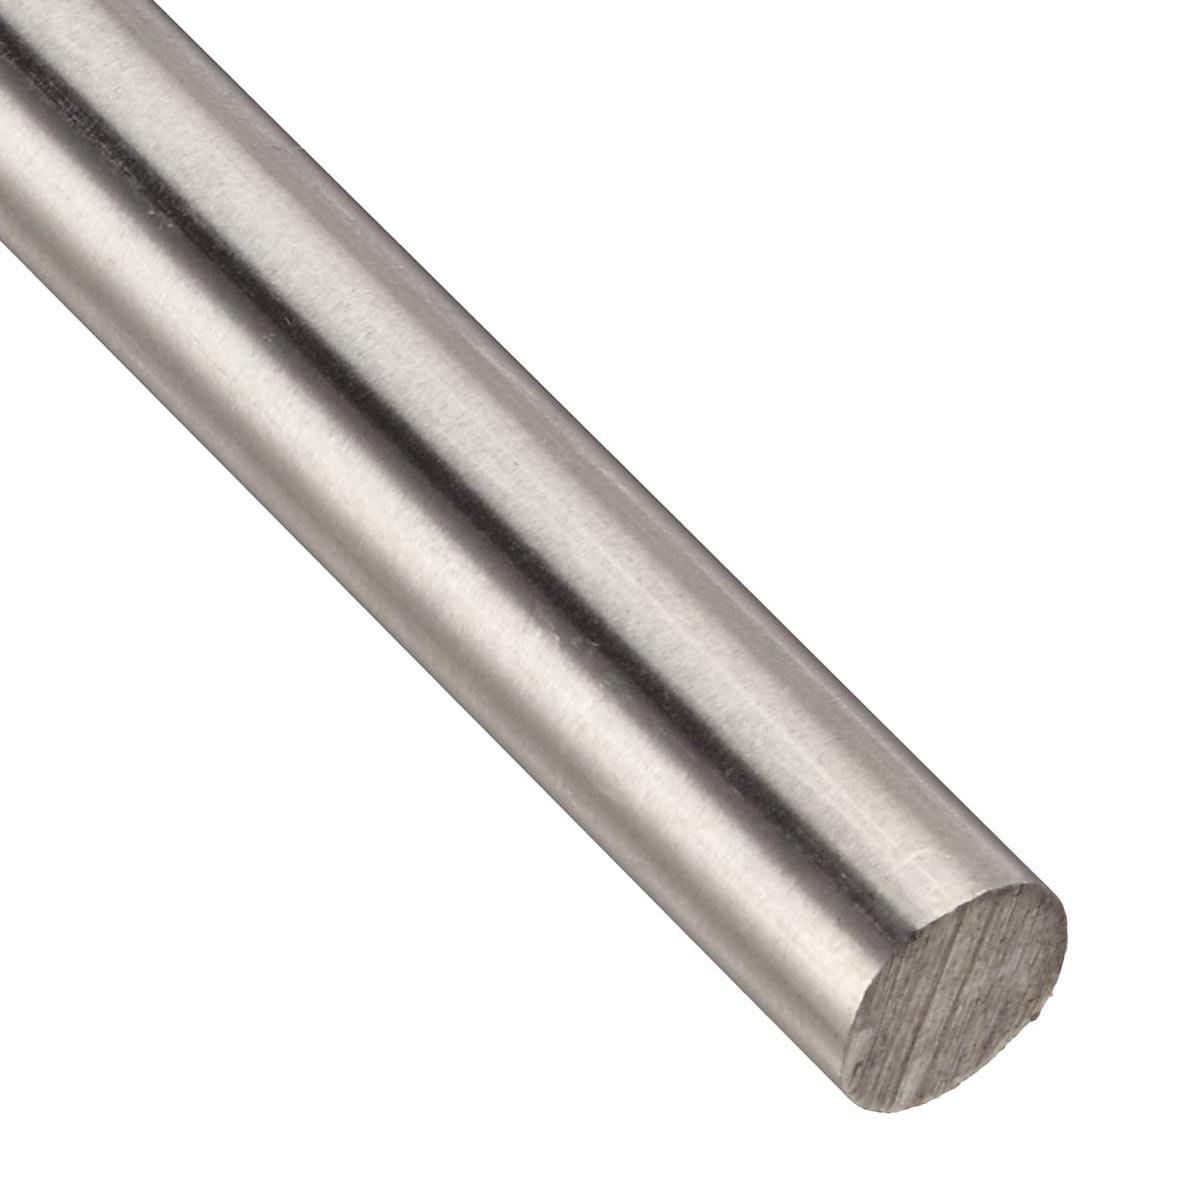 384mm Stainless Steel Rod with 8mm Diameter-Robocraze